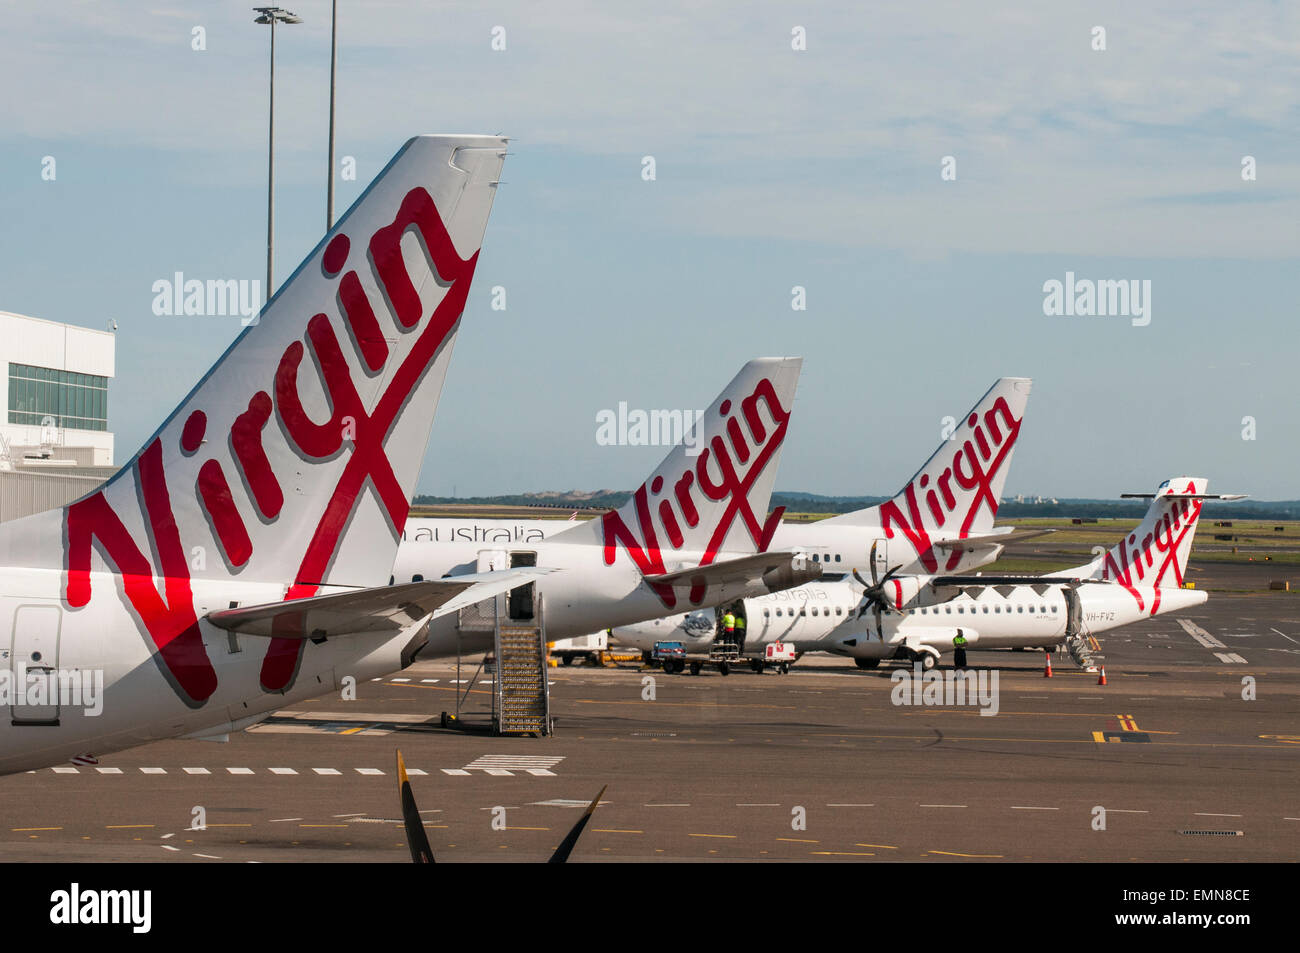 Virgin Australia avion sur le tarmac de l'aéroport de Melbourne Banque D'Images